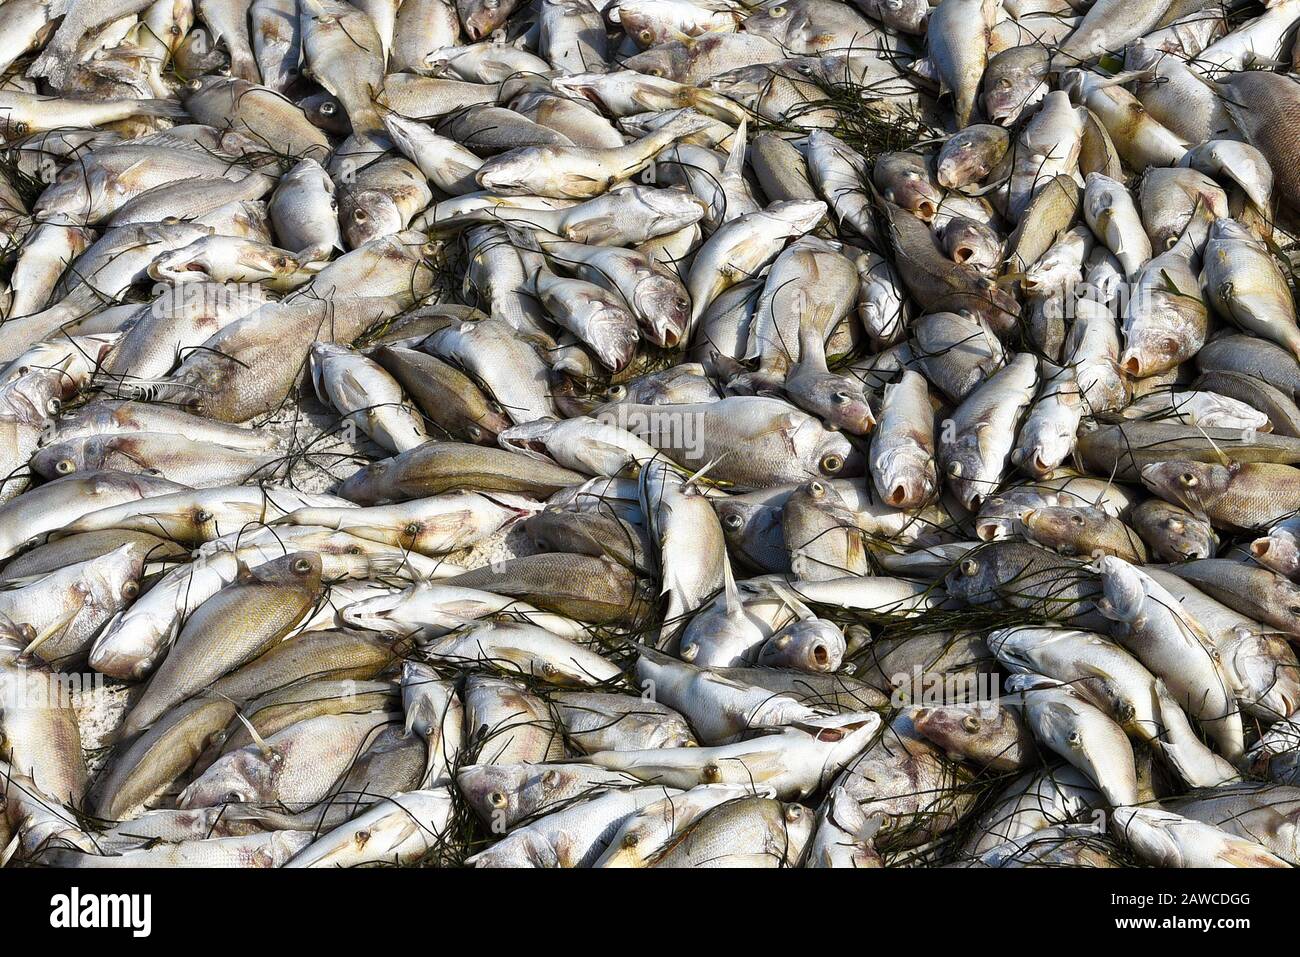 Tide rouge: Plage couverte de poissons morts tués par la floraison d'algues rouges toxiques. Banque D'Images